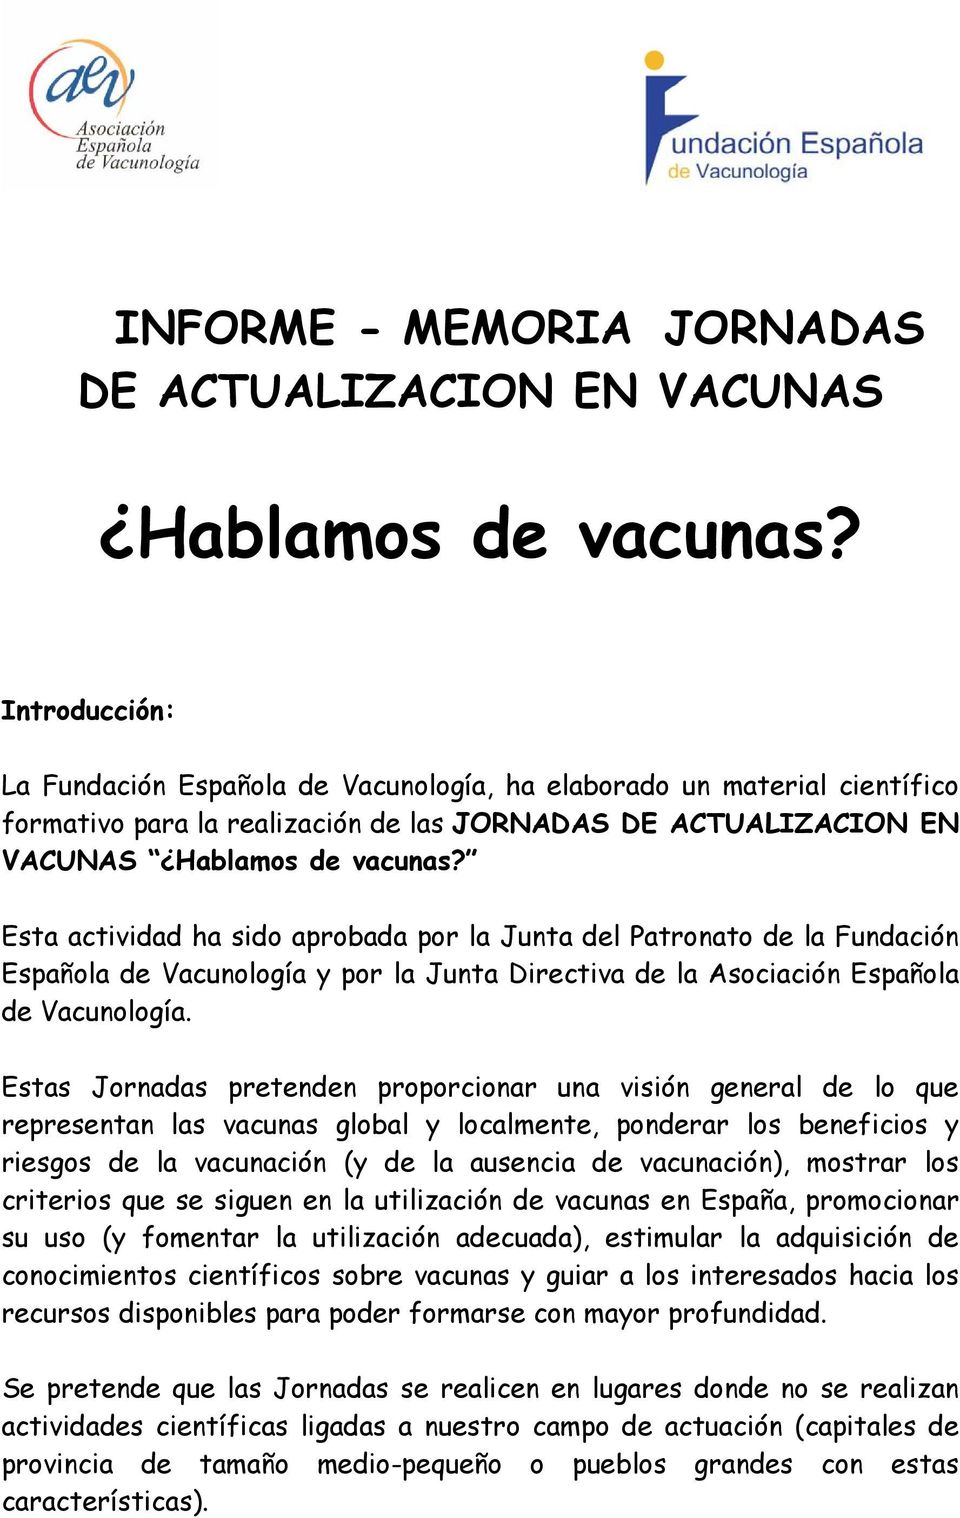 Esta actividad ha sido aprobada por la Junta del Patronato de la Fundación Española de Vacunología y por la Junta Directiva de la Asociación Española de Vacunología.